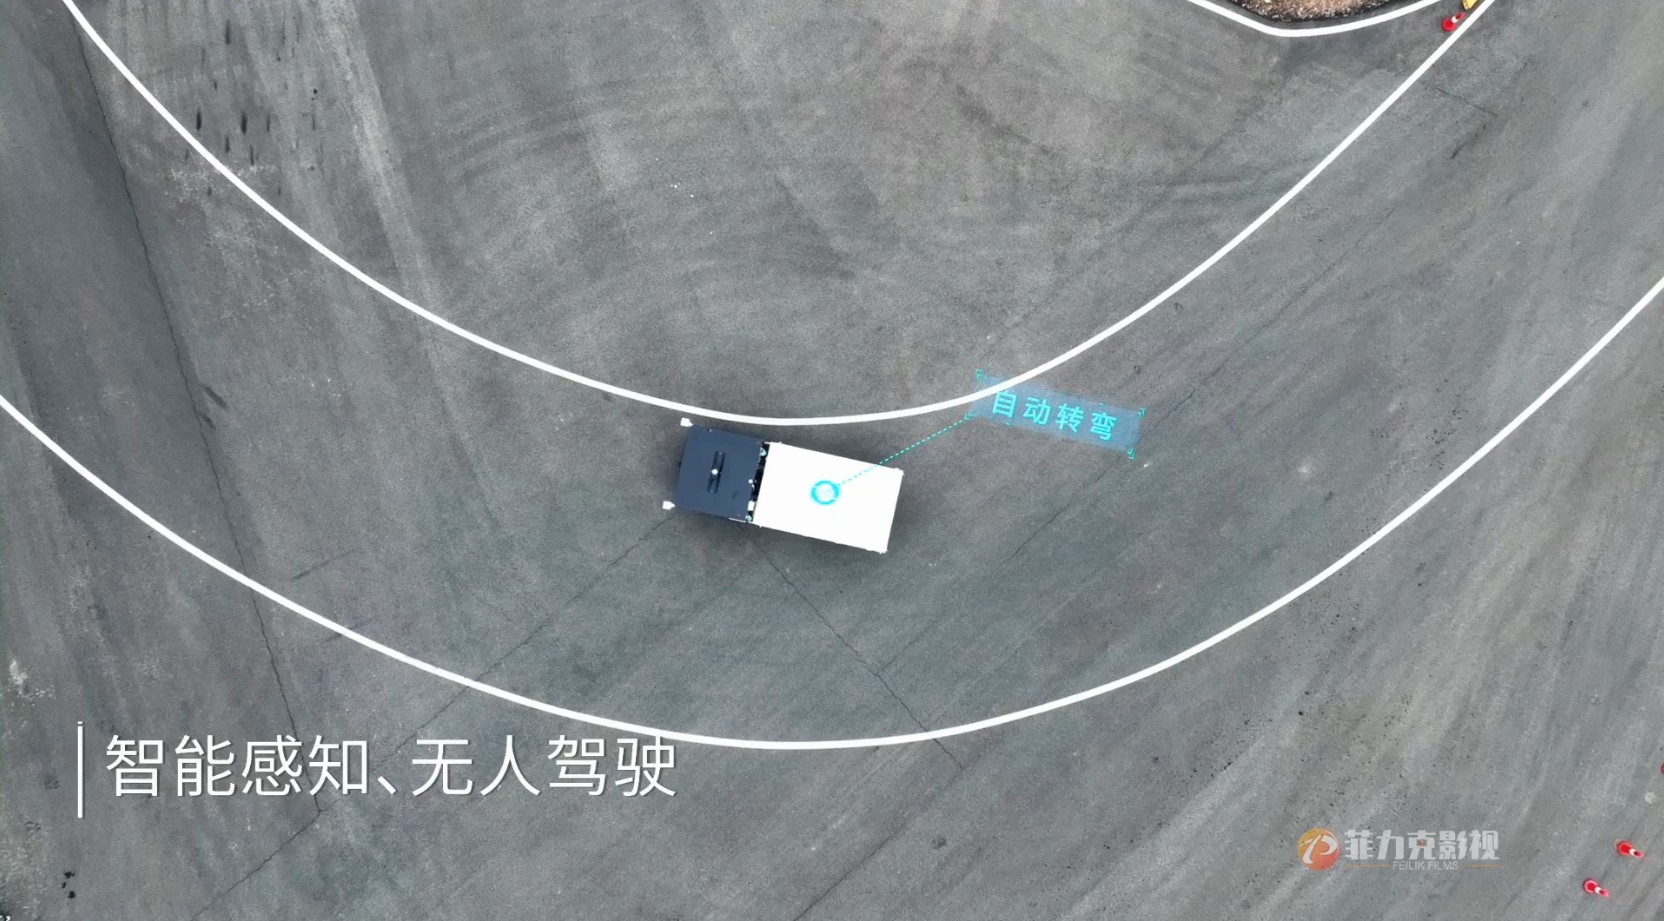 郑州三维动画制作公司——穿山甲矿用运输机器人产品演示